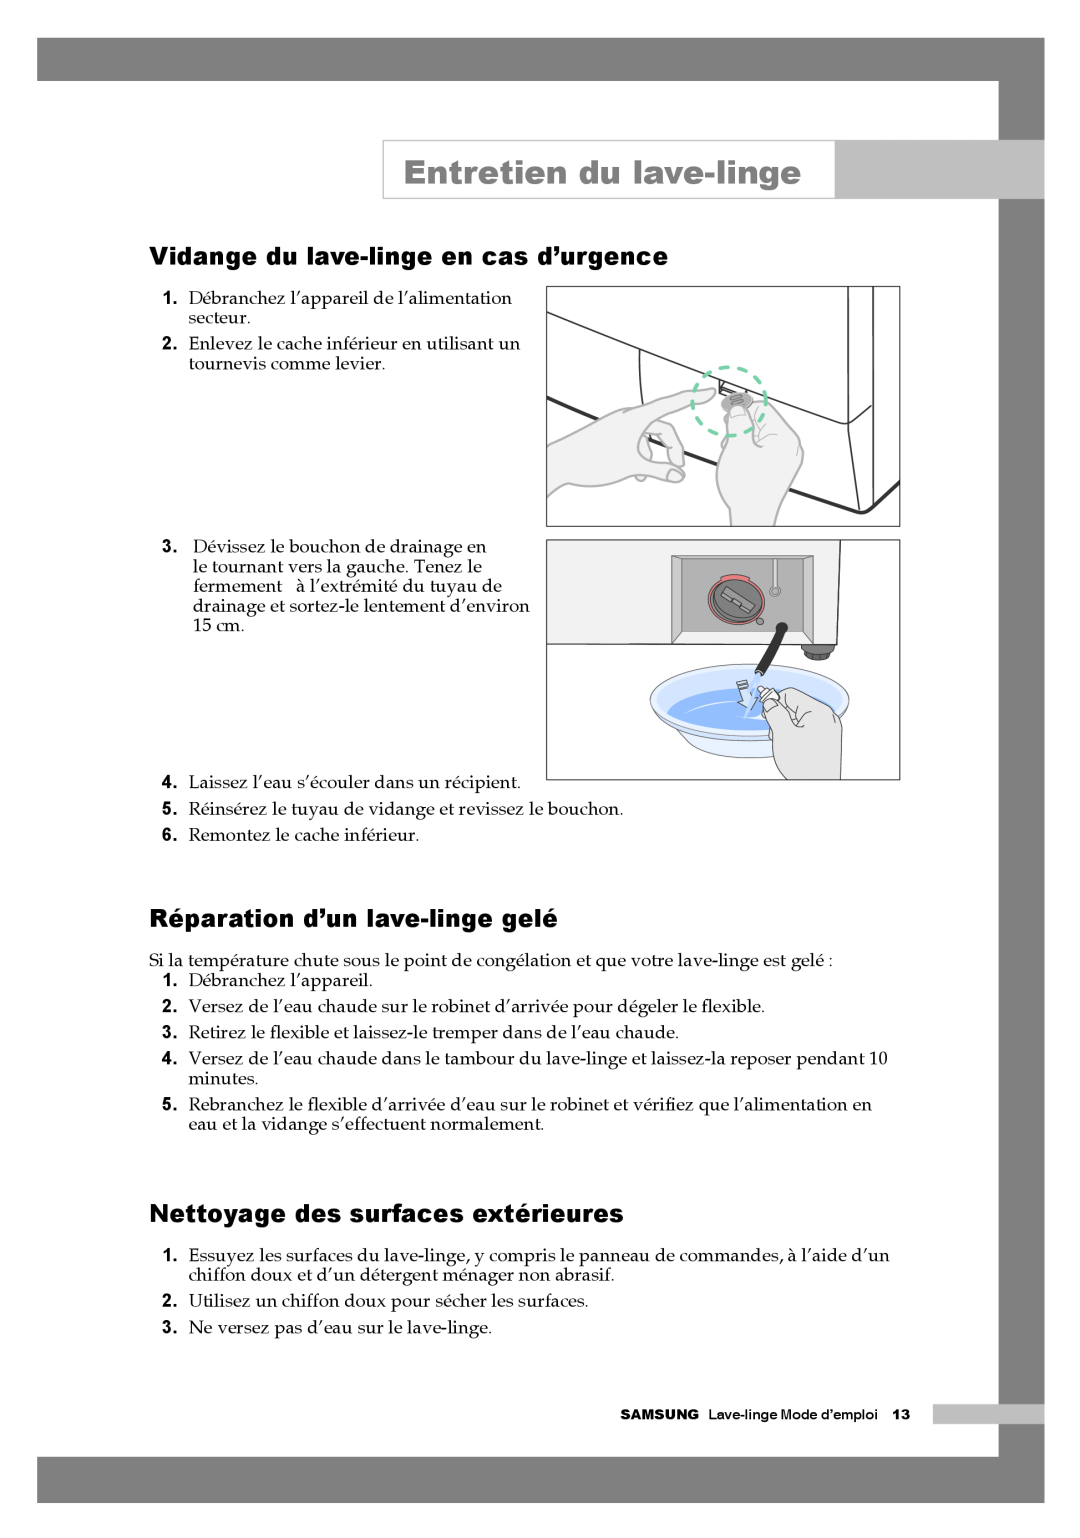 Samsung Q1657AVGW/XEF Entretien du lave-linge, Vidange du lave-linge en cas d’urgence, Réparation d’un lave-linge gelé 